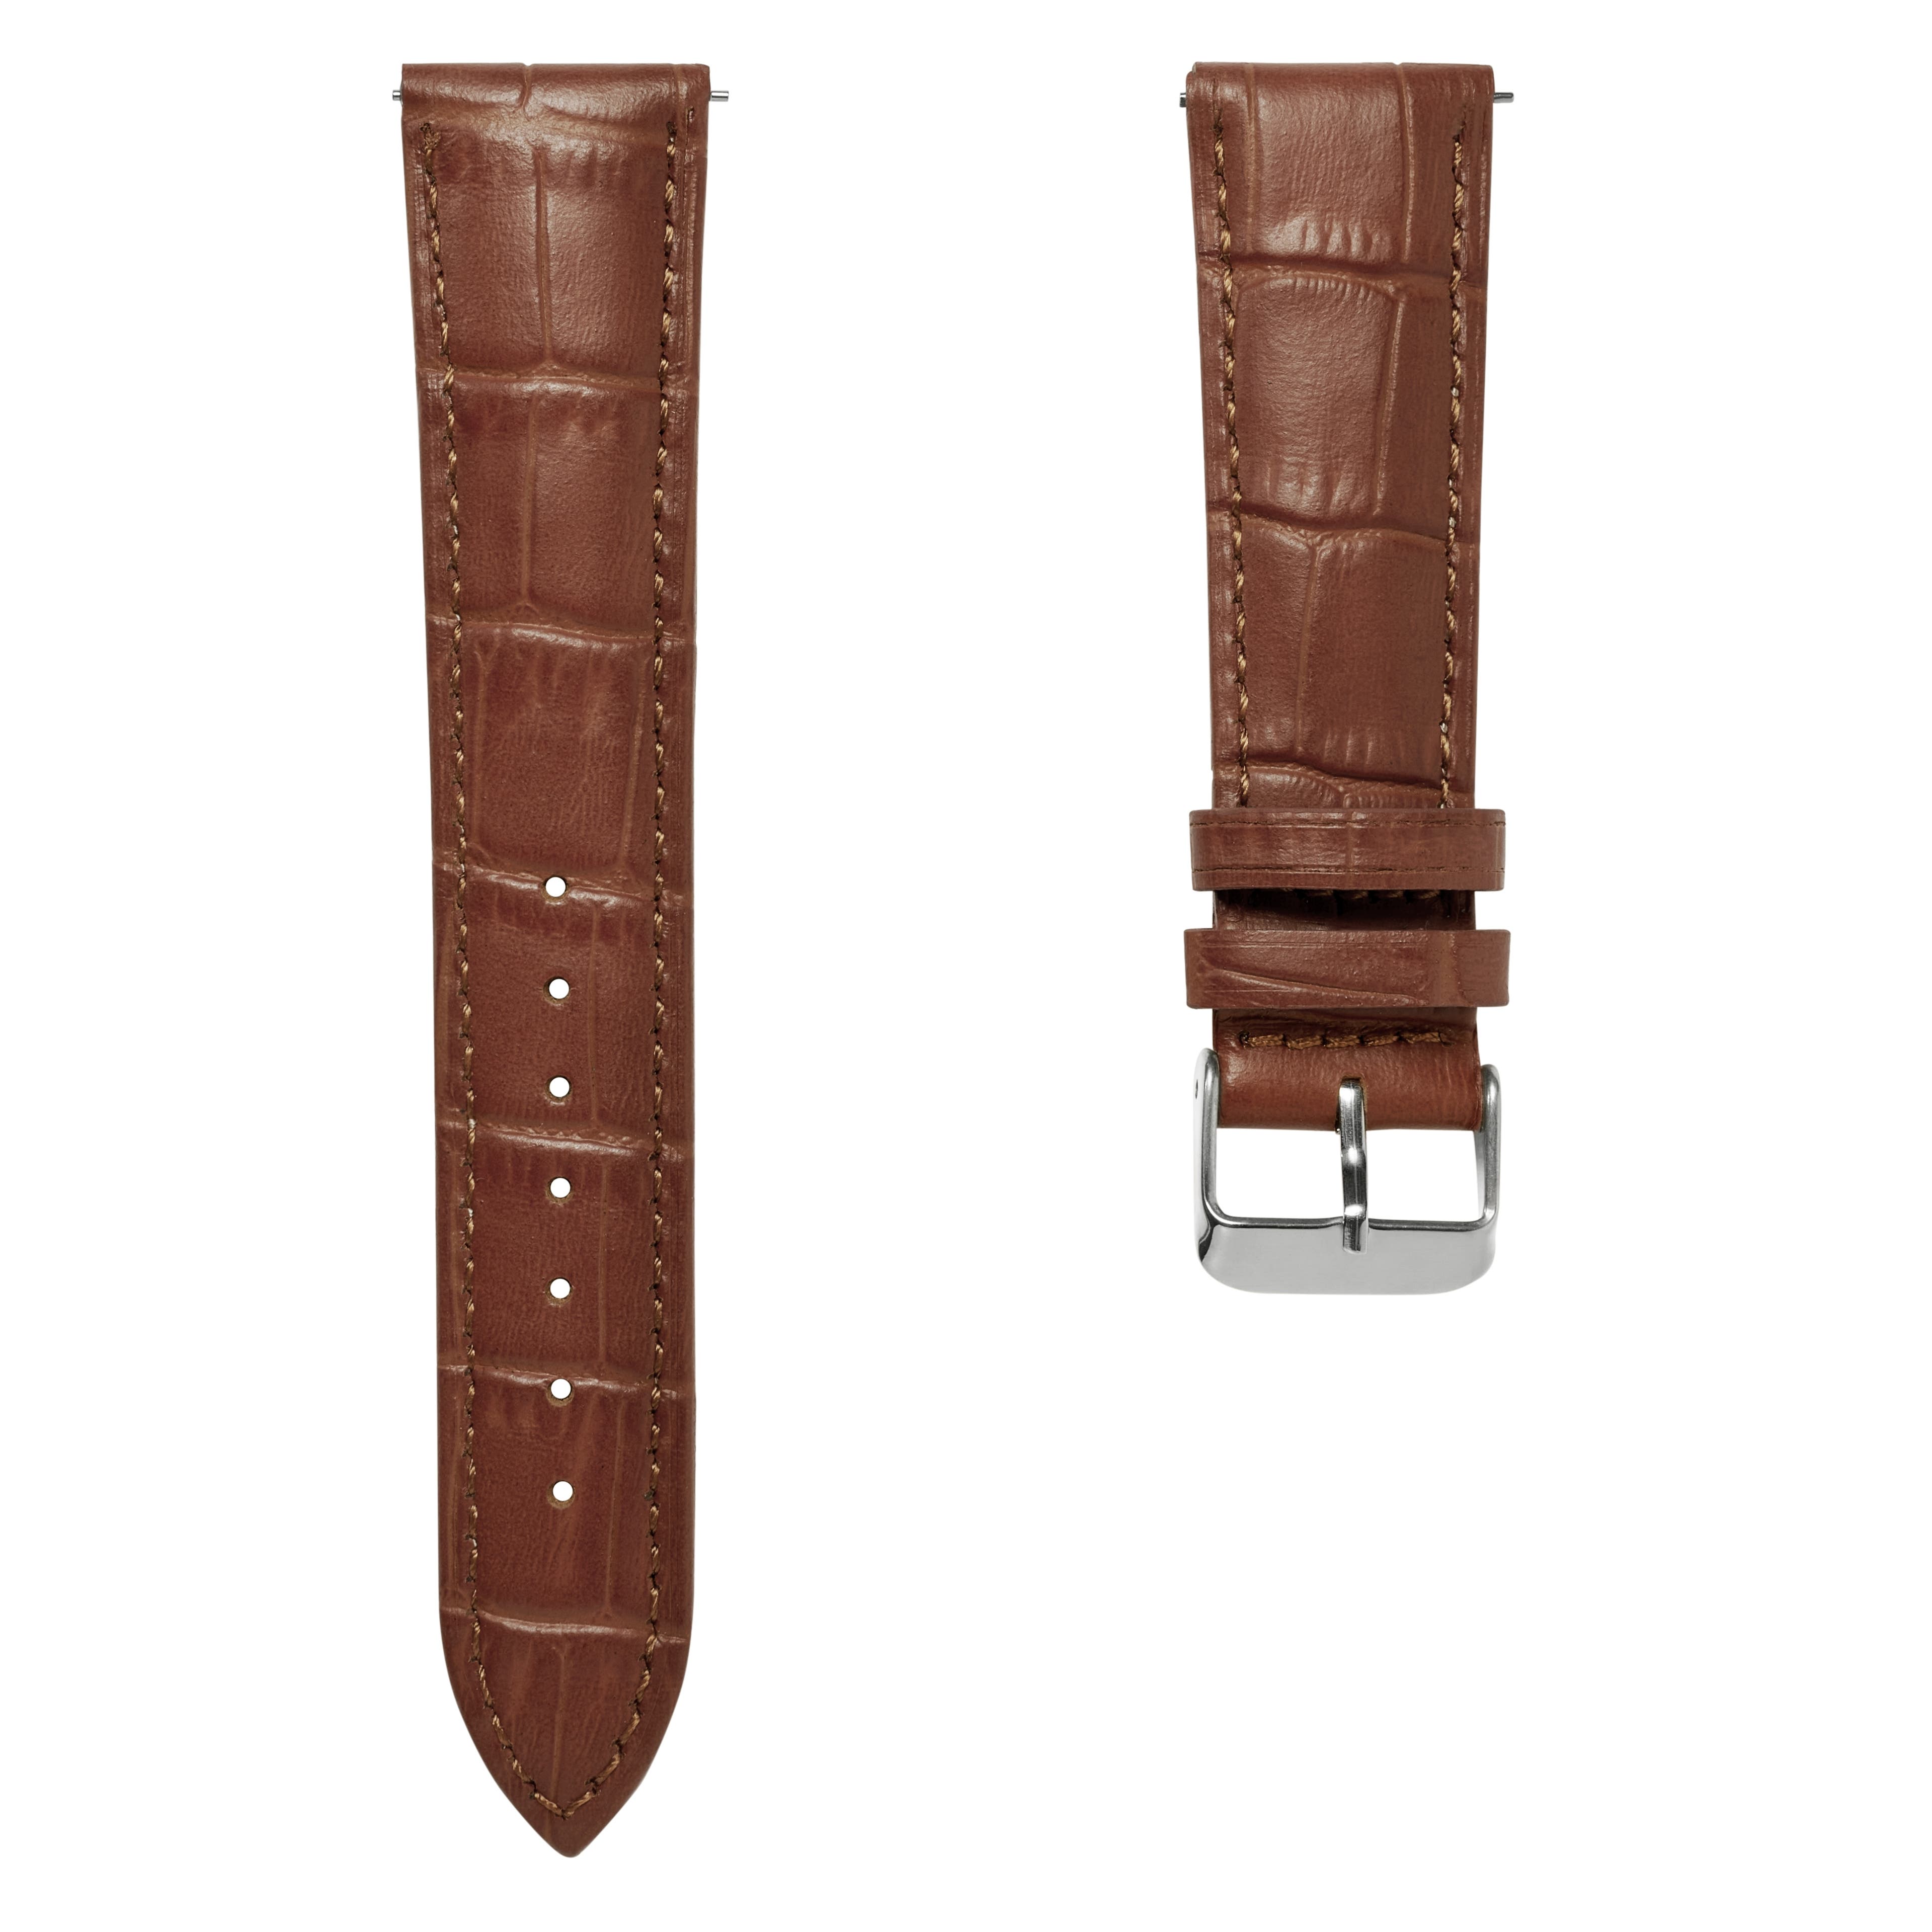  Bracelet de montre en cuir marron à motif crocodile avec boucle argentée et système d'attache rapide – 22 mm